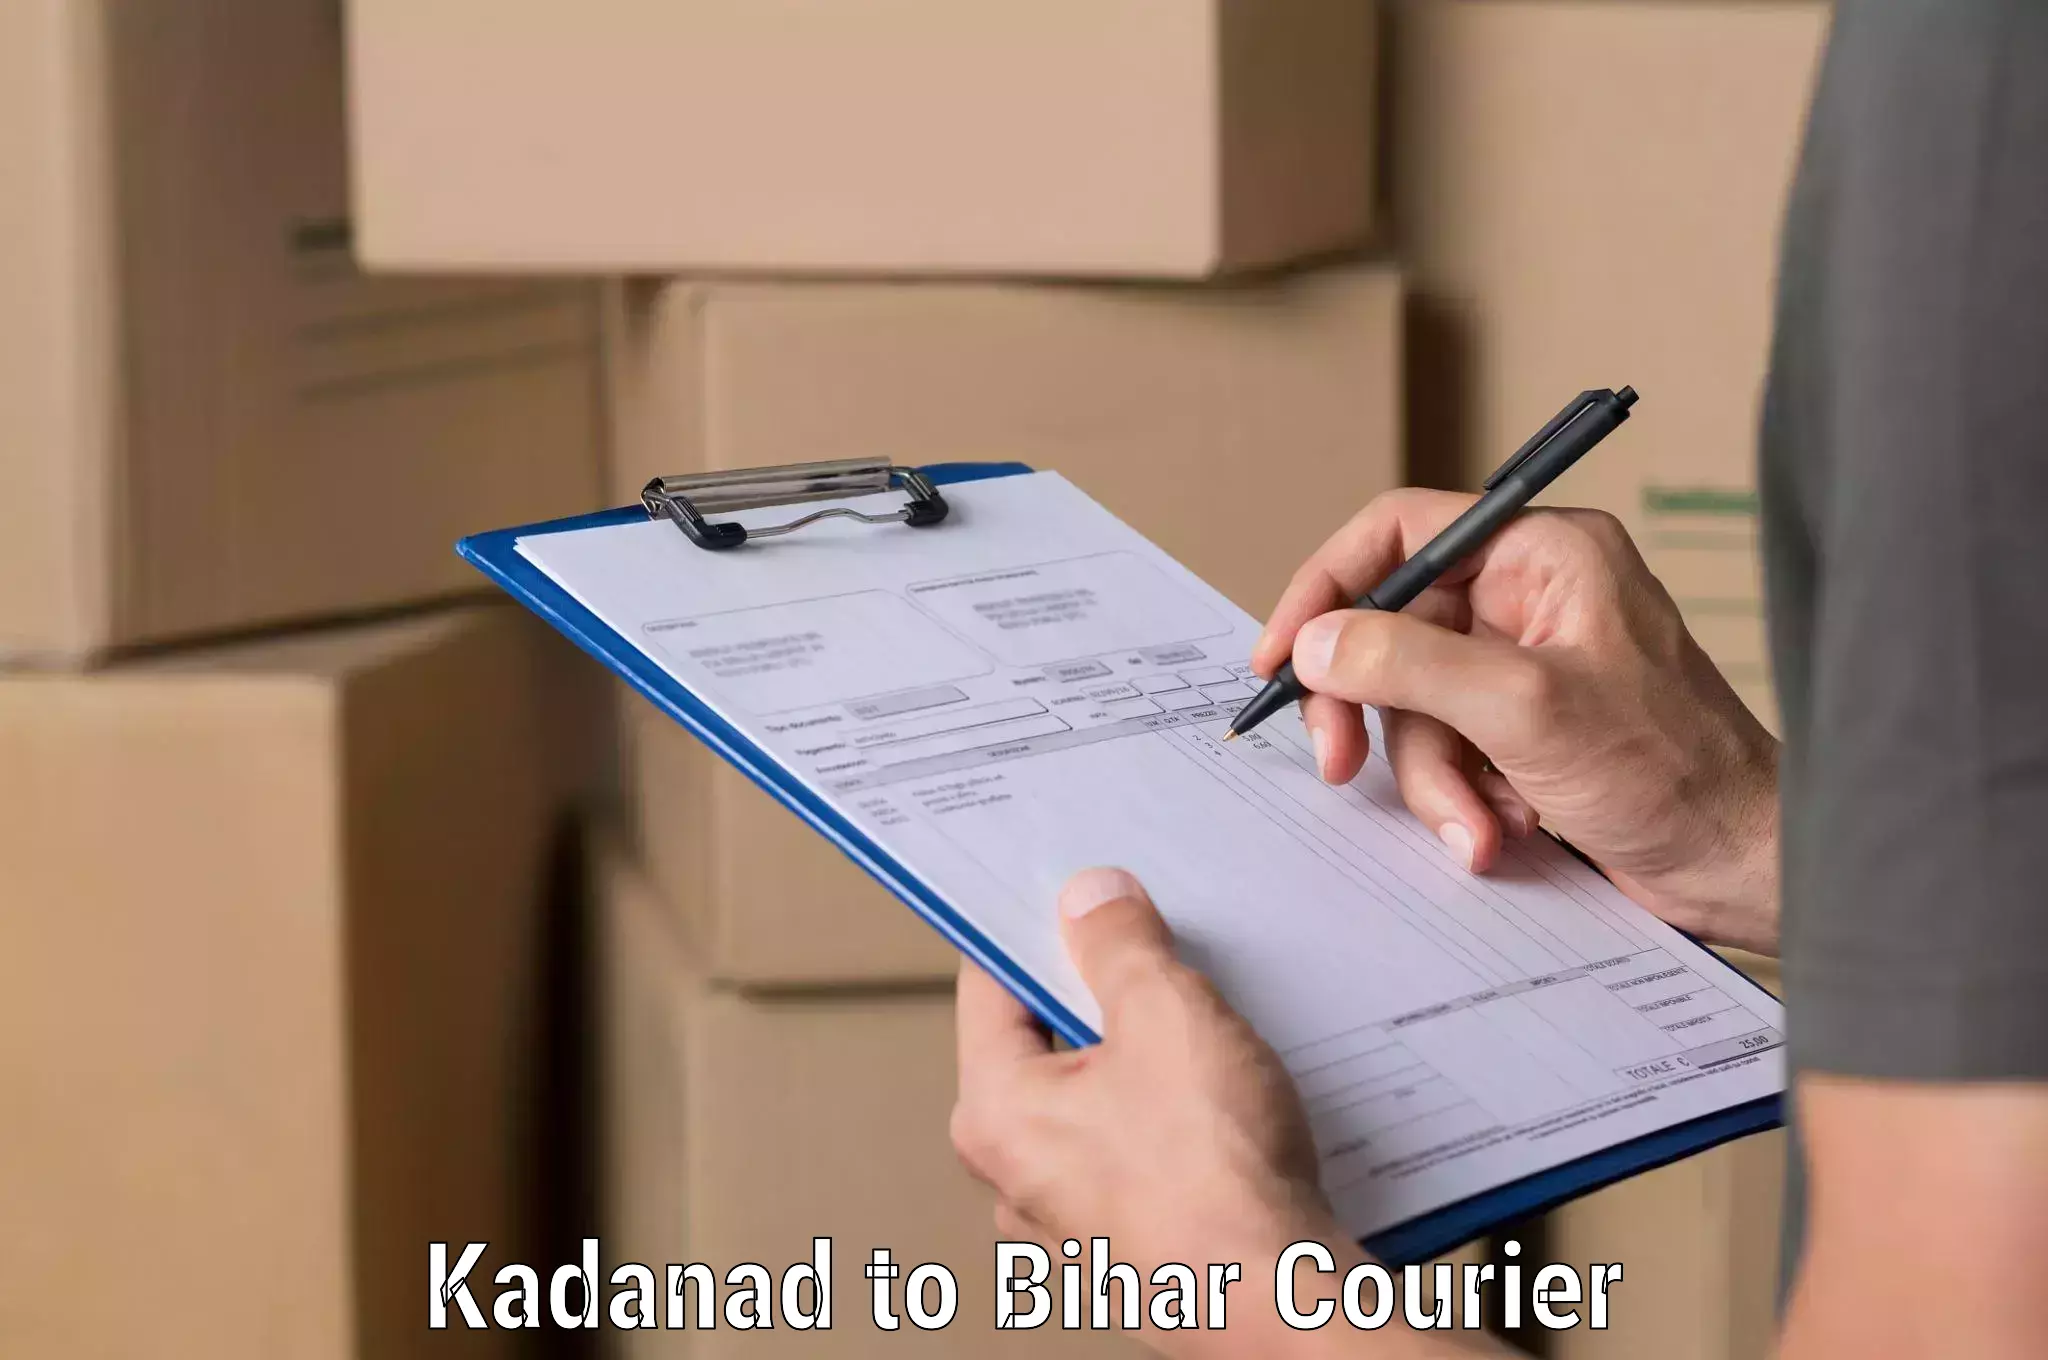 Urgent courier needs Kadanad to Sharfuddinpur